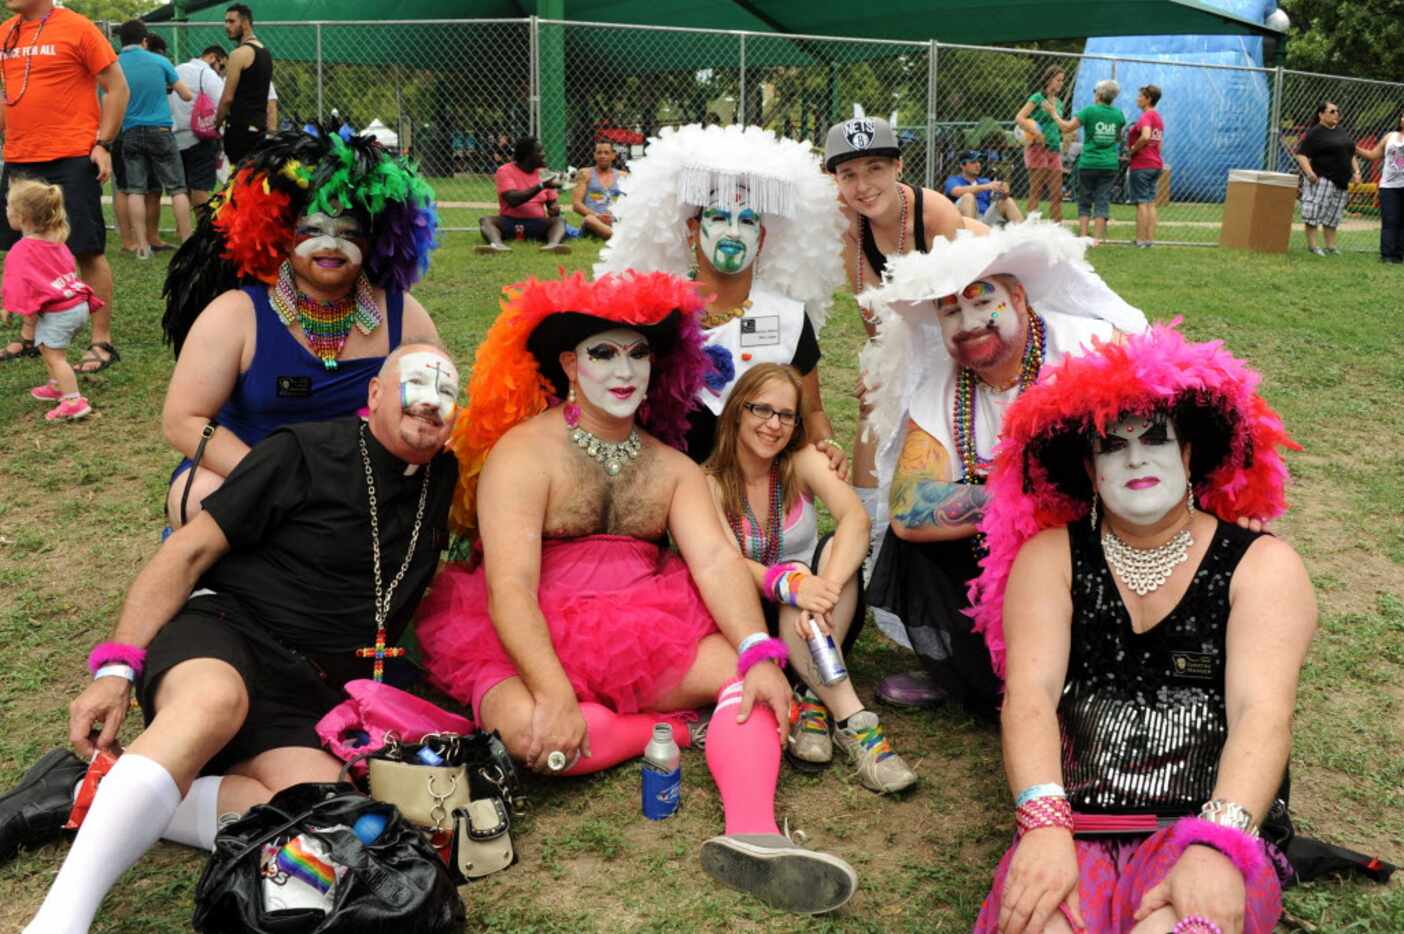 The Sisters celebrate the 32nd annual Dallas Pride parade at Reverchon Park in Dallas, TX on...